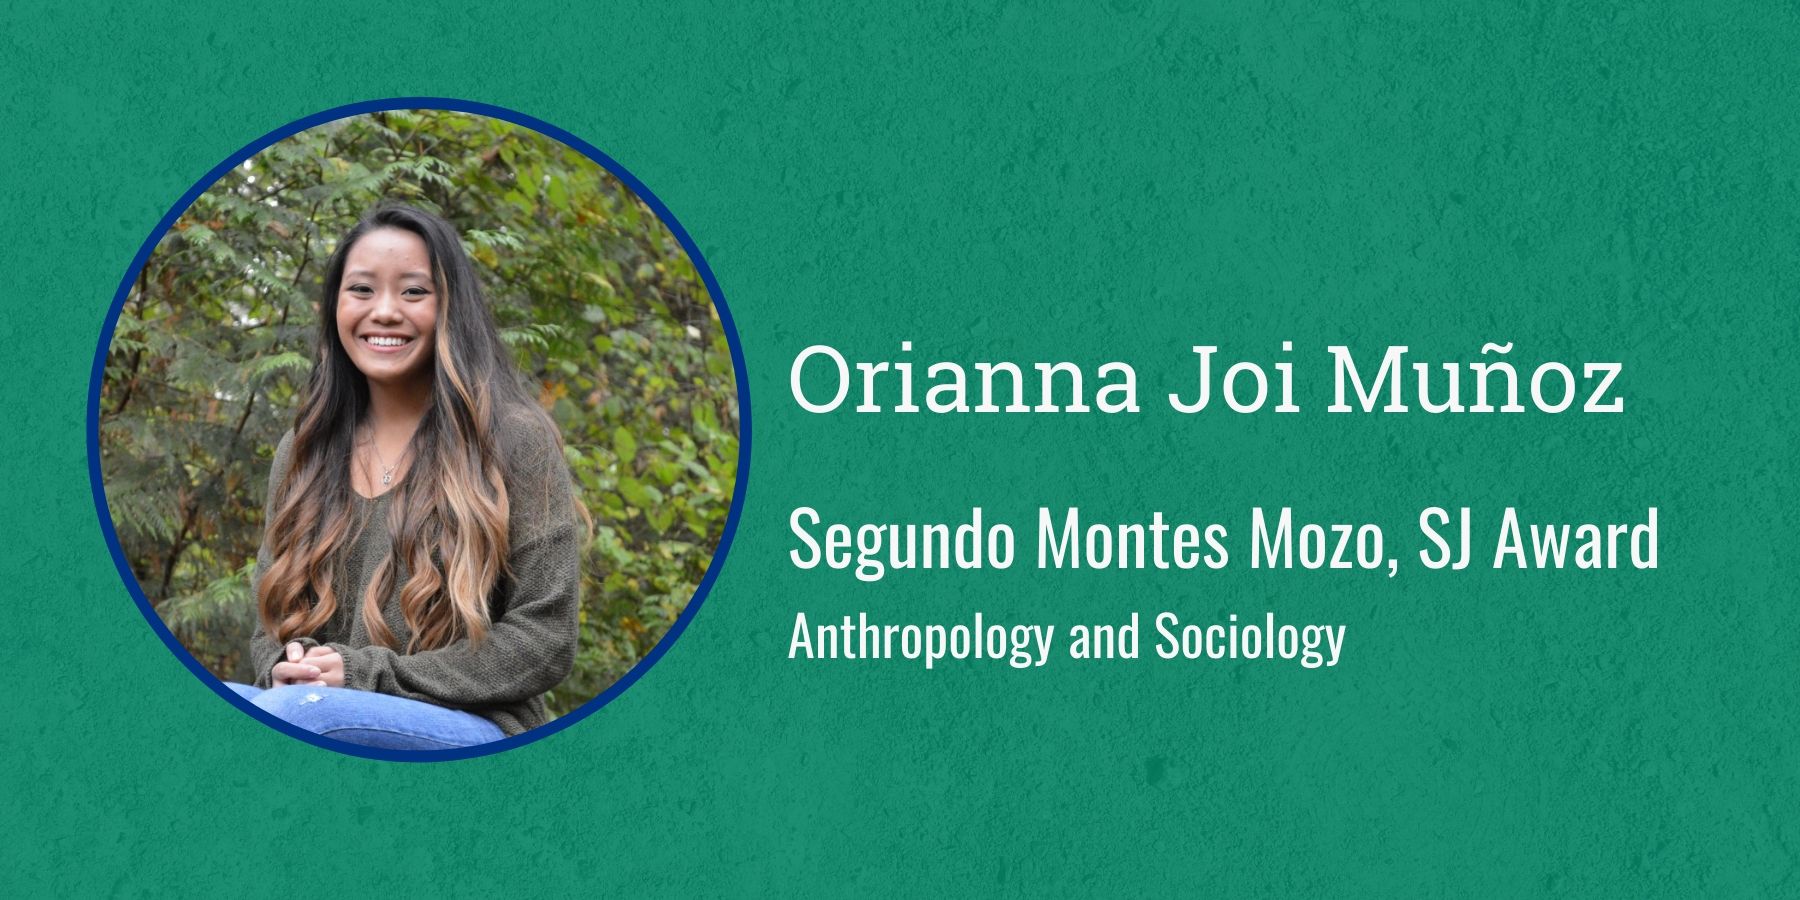 Photo of Orianna Joi Muñoz and text Segundo Montes Mozo, SJ Award, Anthropology and Sociology